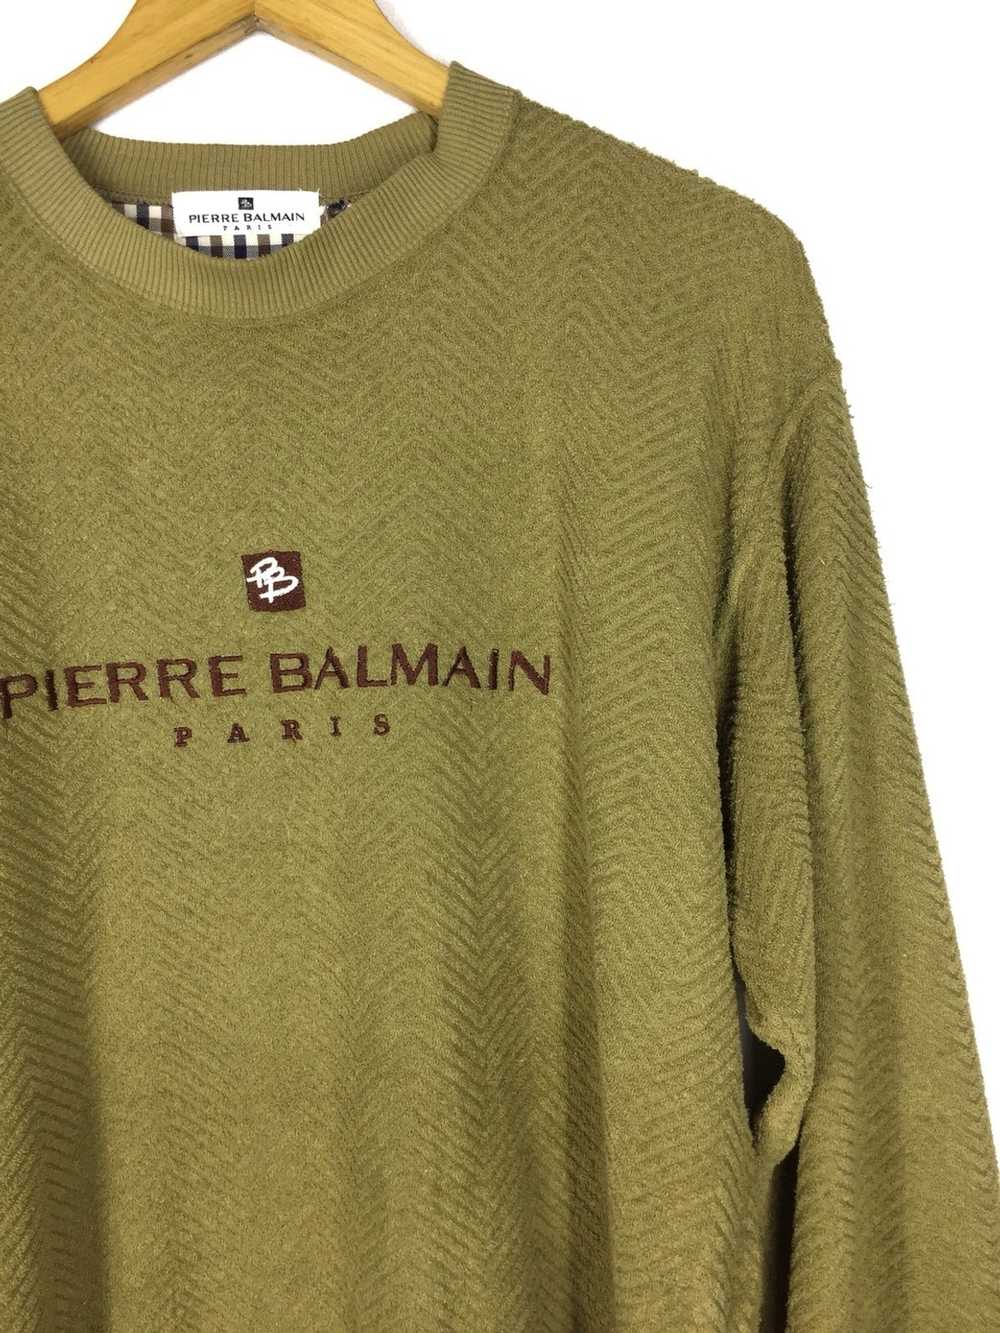 Balmain × Pierre Balmain Pierre Balmain Sweatshirt - image 3